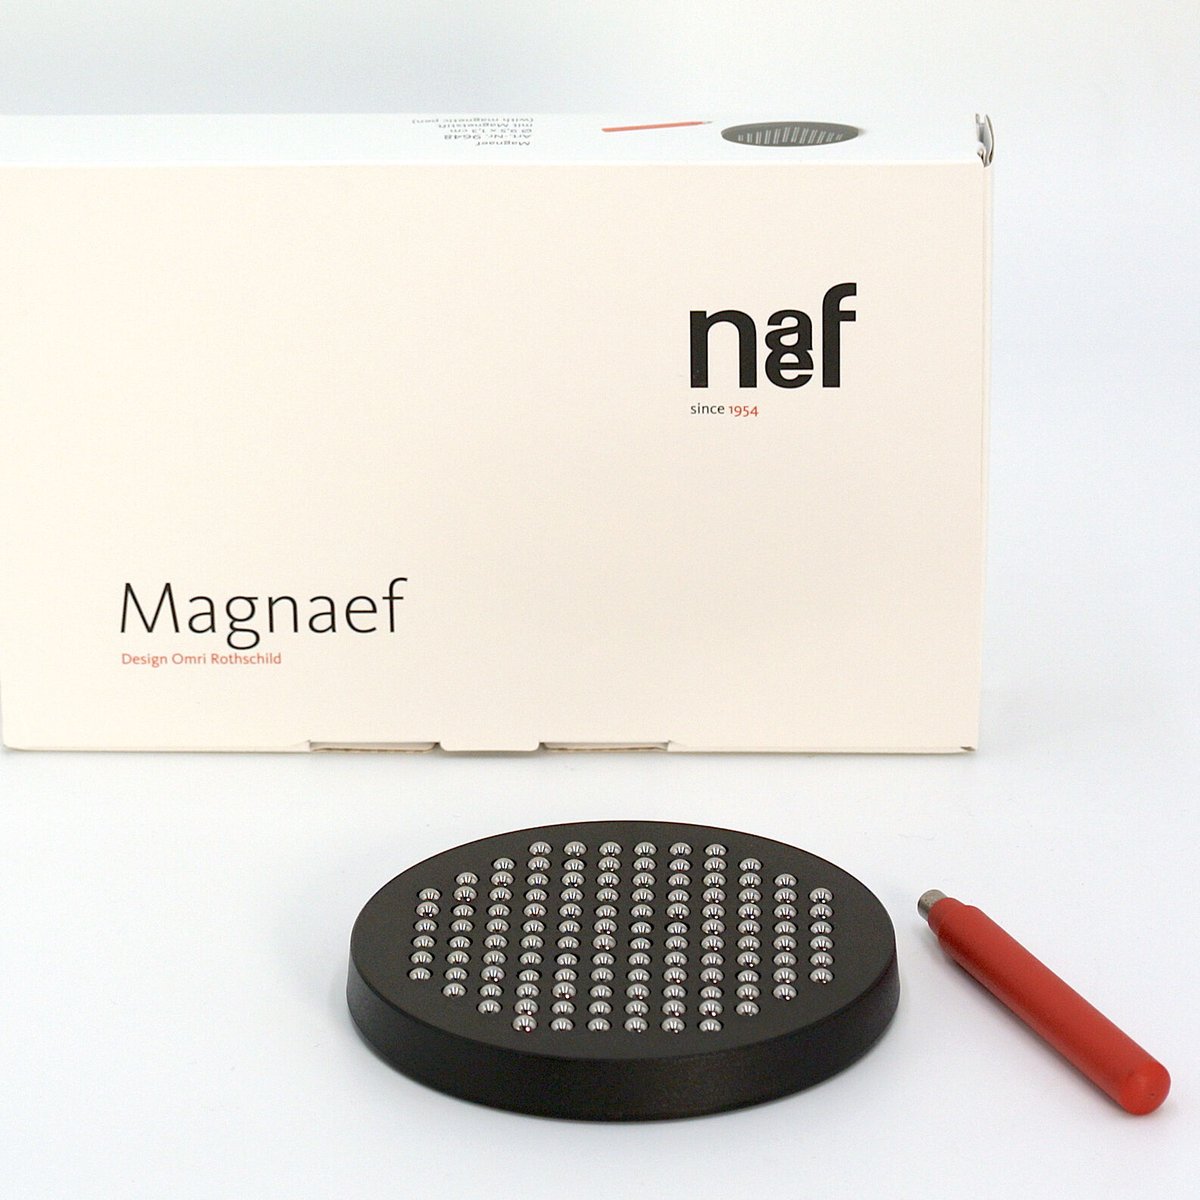 素晴らしい品質 ネフ社 マグネフ MAGNAEFの通販 おもちゃ